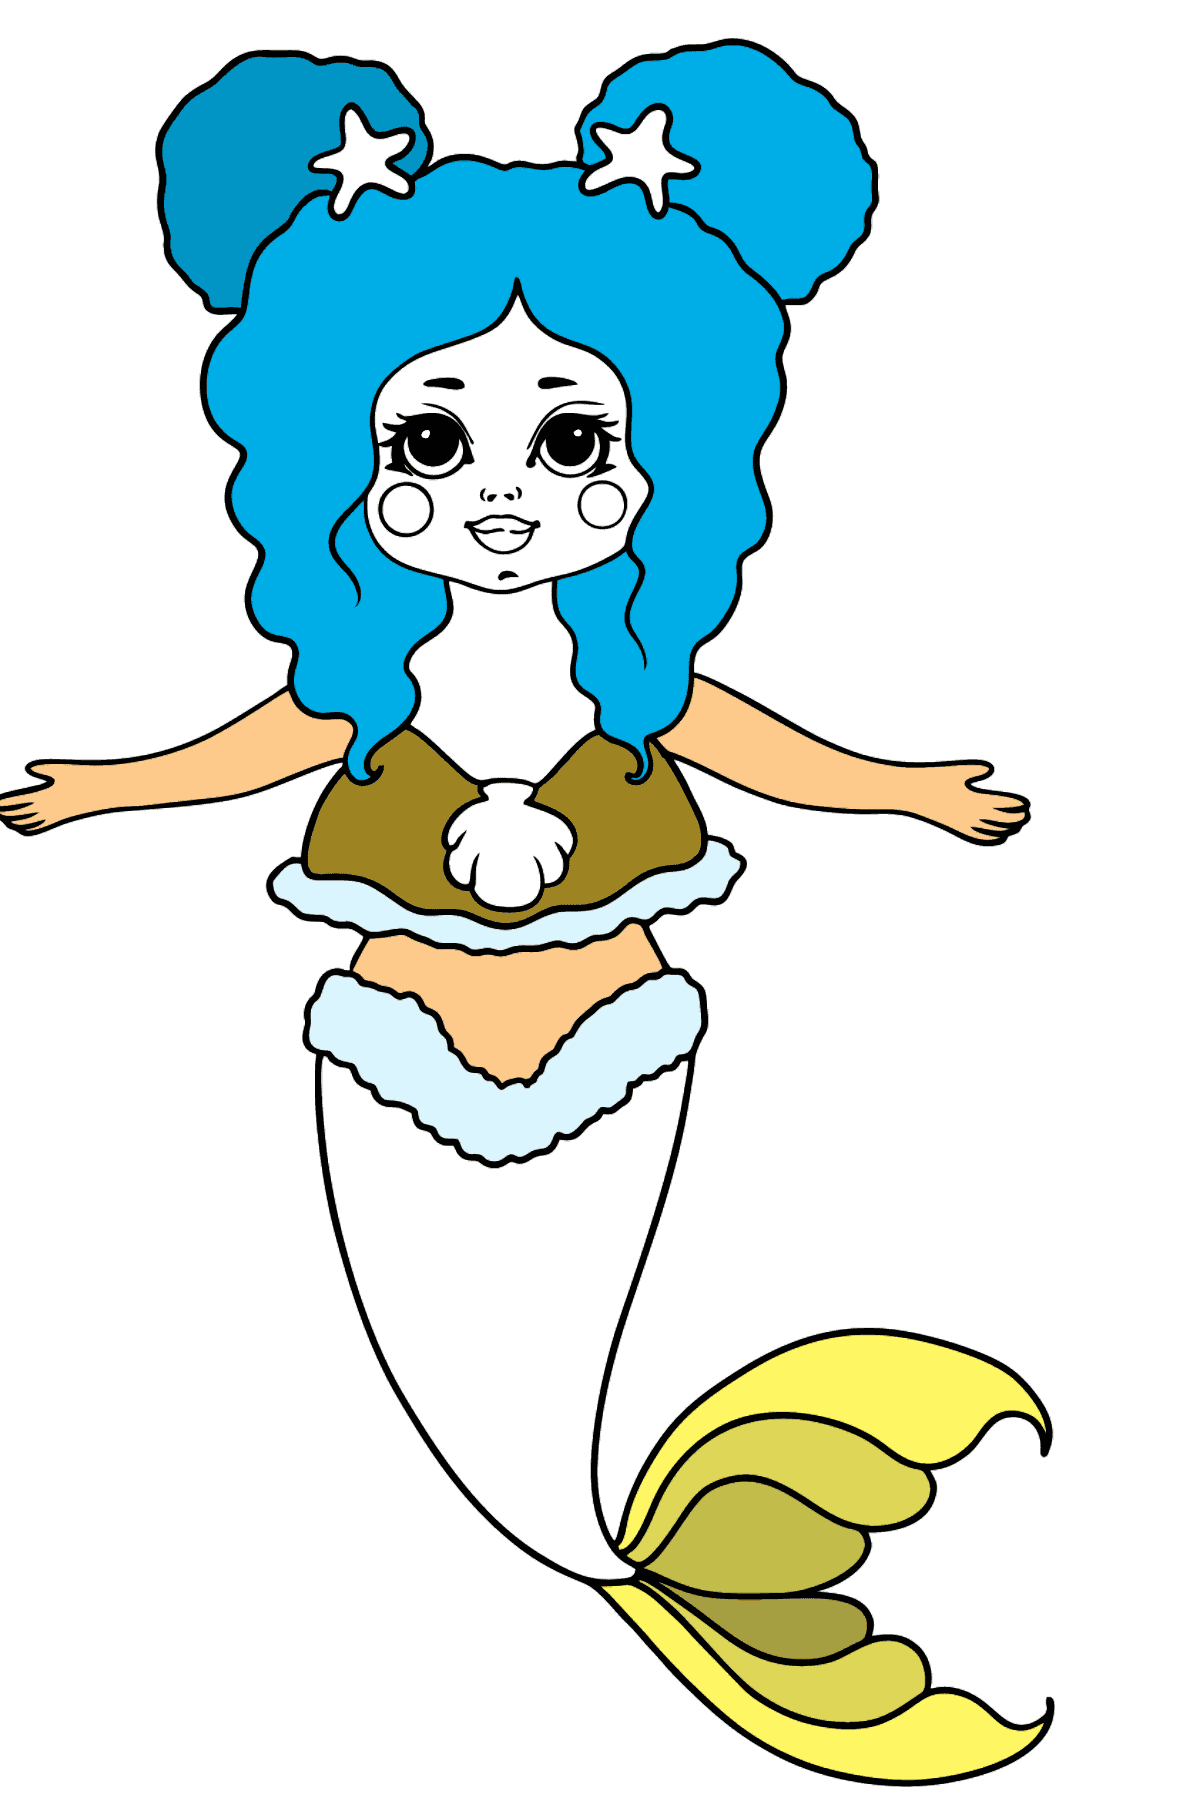 Meerjungfrau mit gelbem Schwanz Ausmalbild - Malvorlagen für Kinder